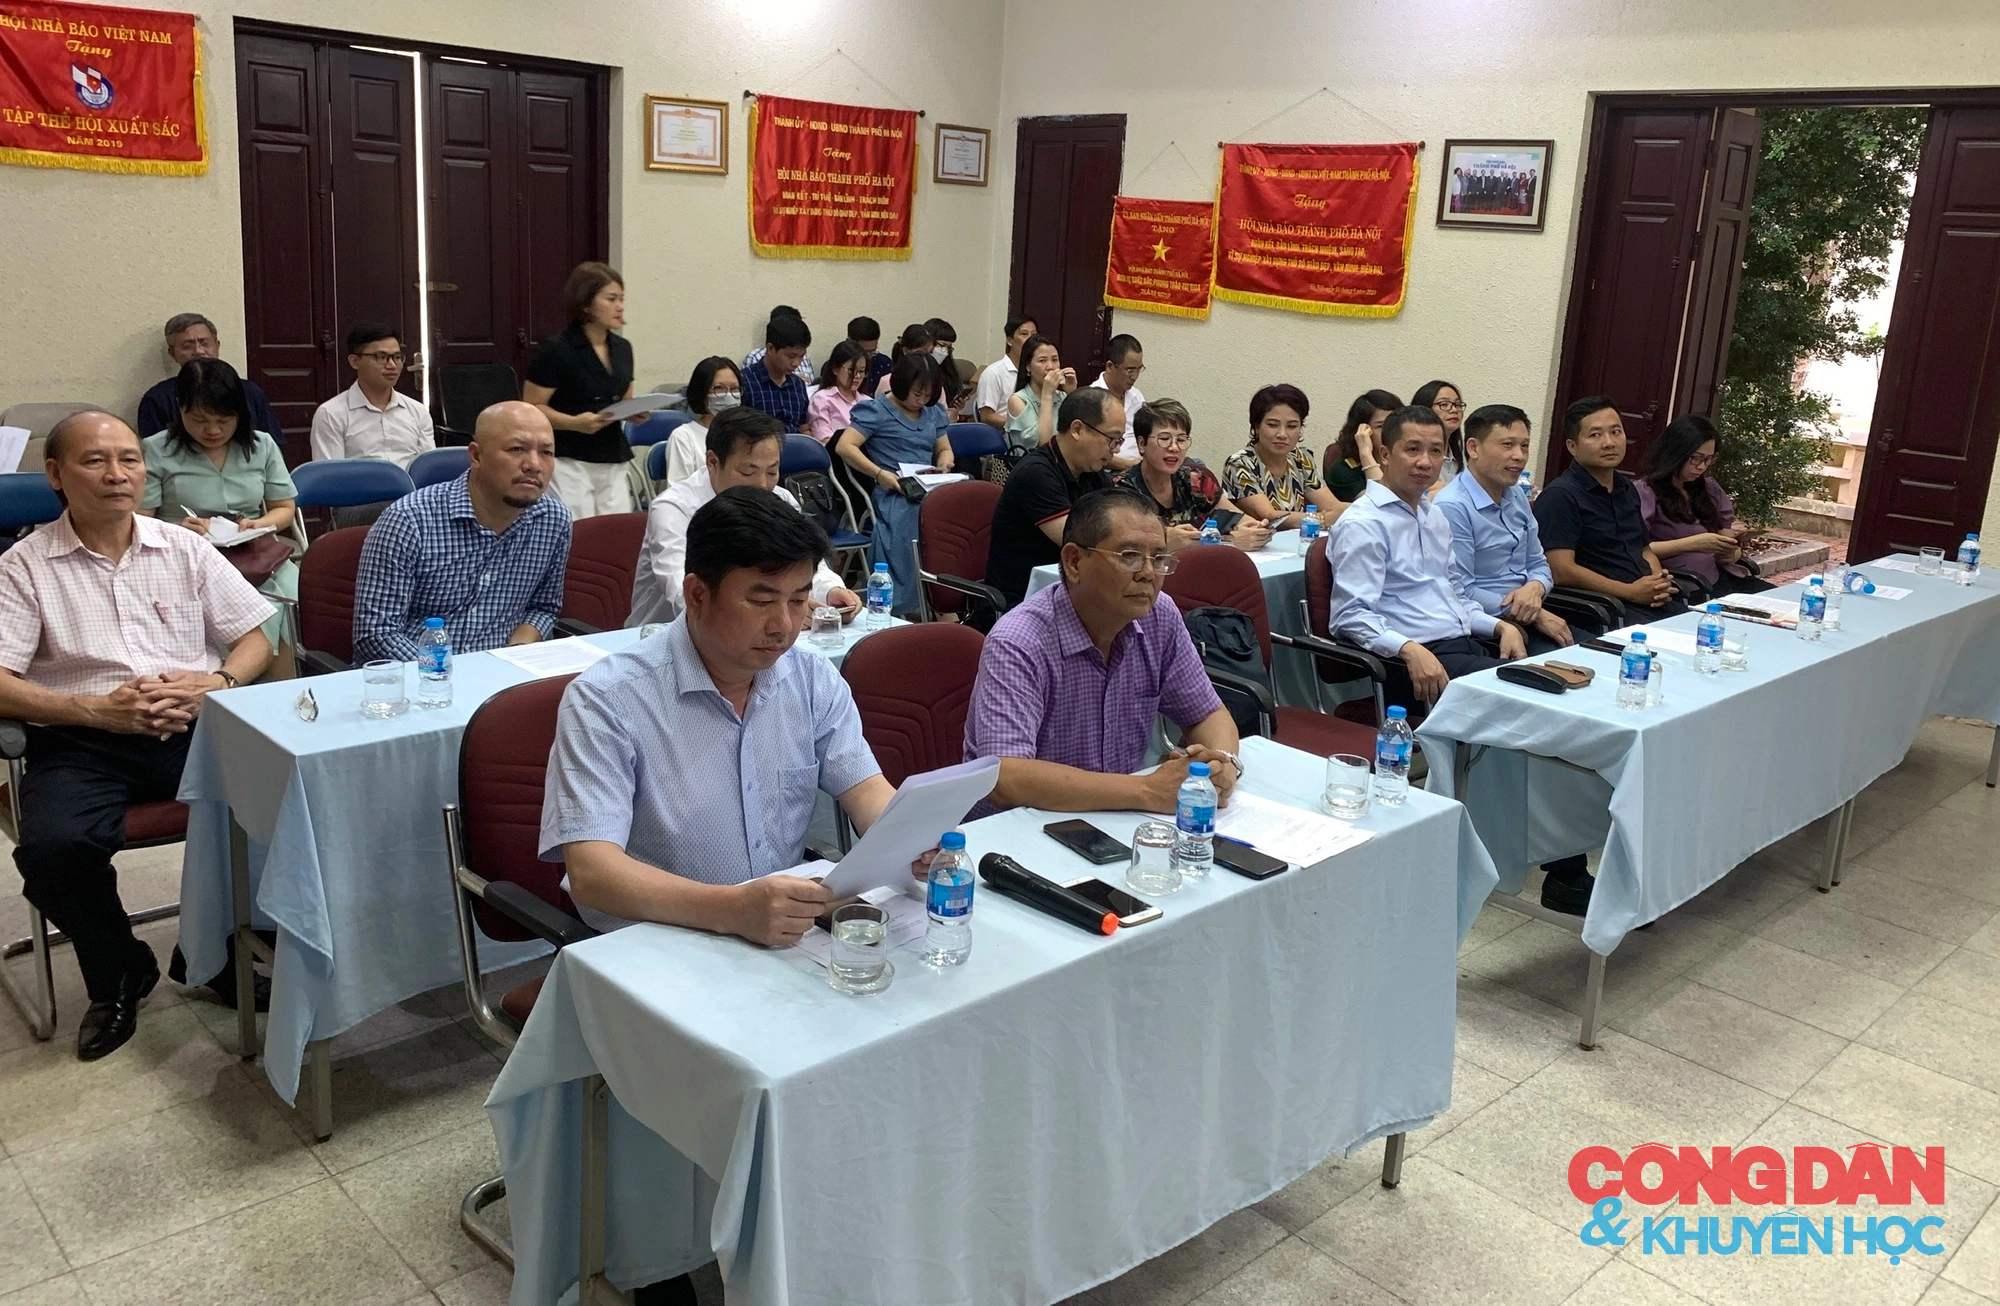 Hà Nội: Xây dựng môi trường văn hóa trong các cơ quan báo chí thủ đô và văn hóa của người làm báo Việt Nam - Ảnh 1.